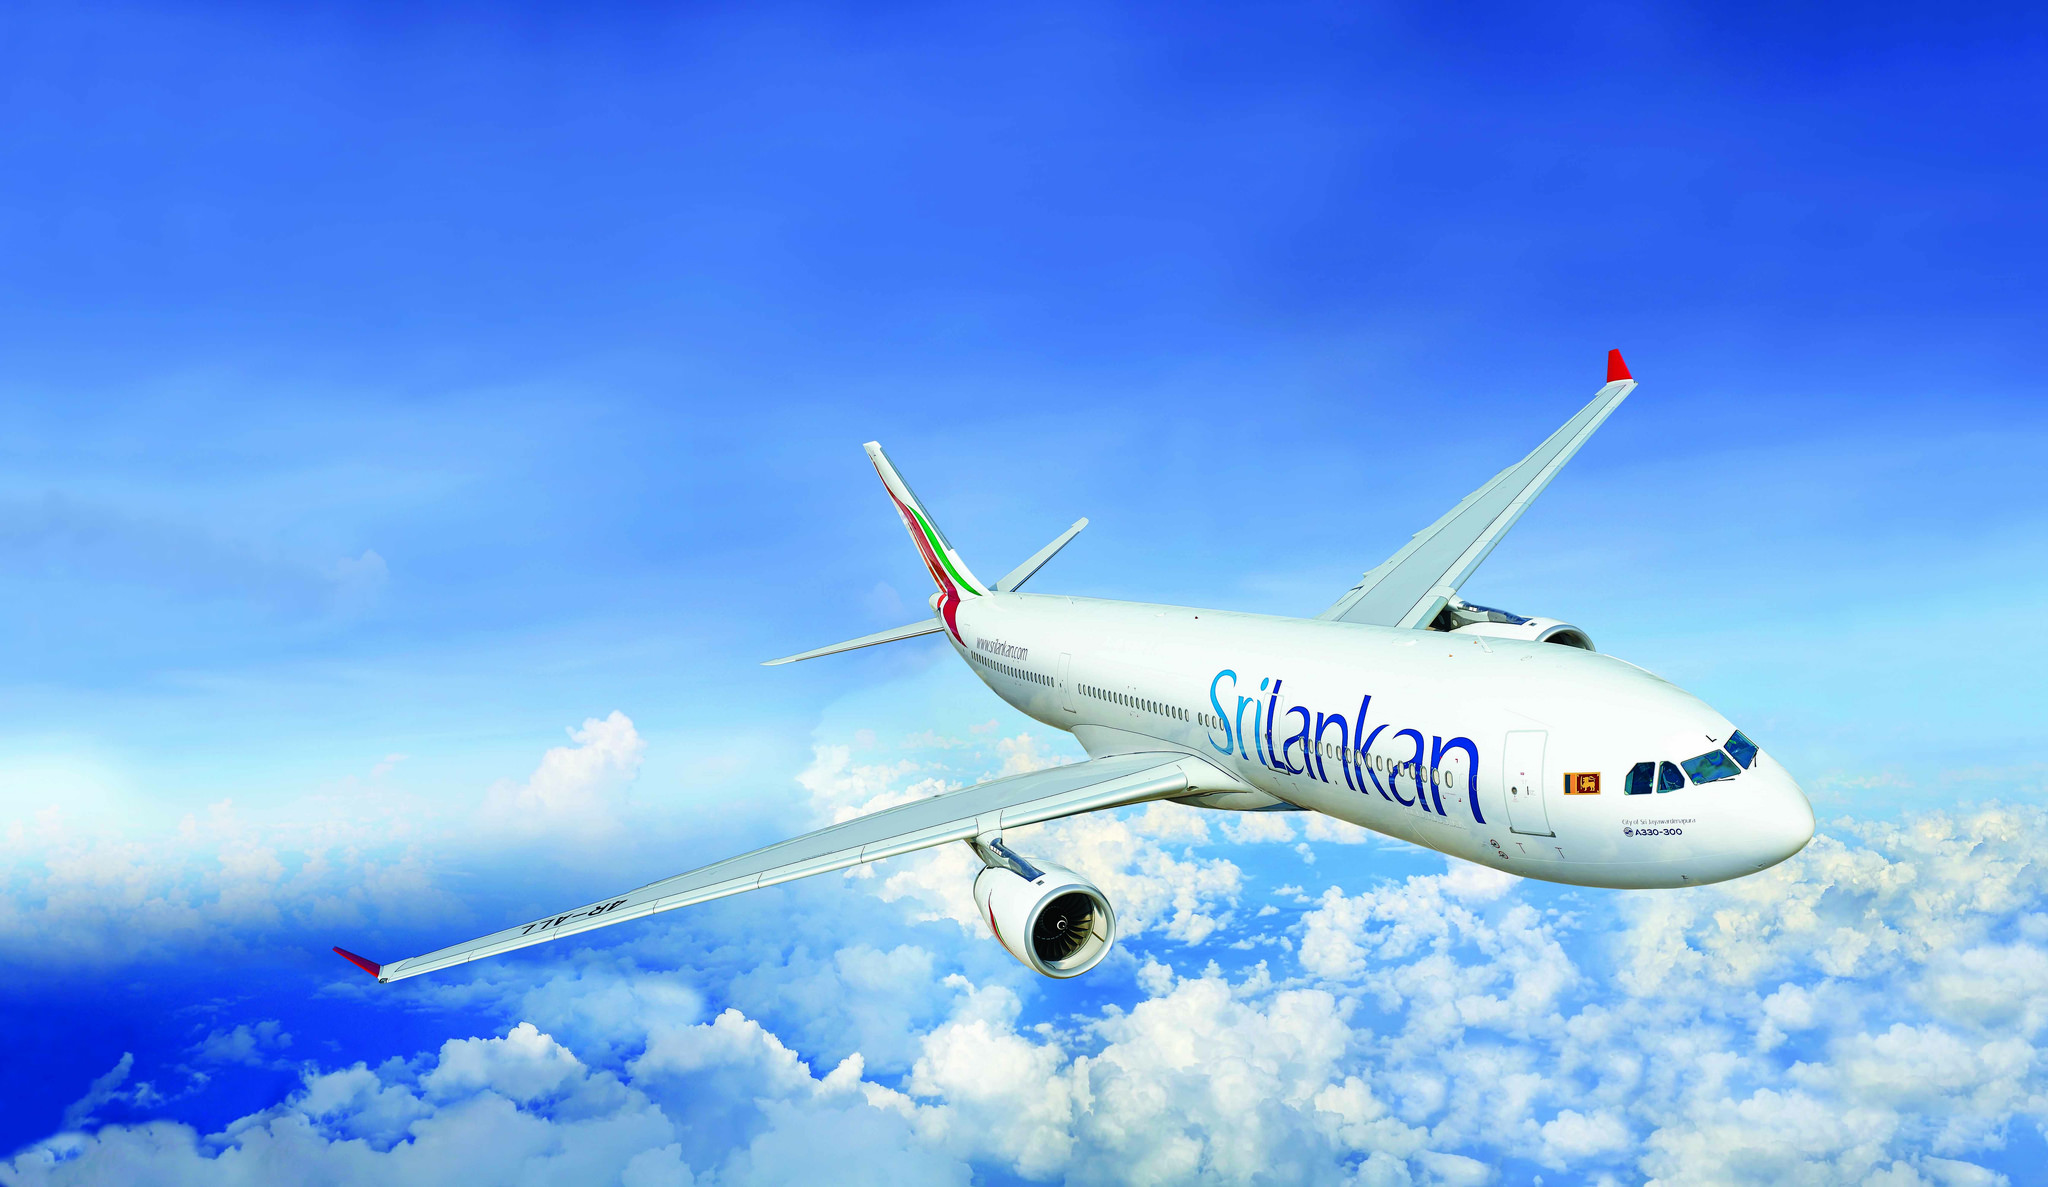 Οι αρουραίοι λαθρεπιβάτες επιβιβάζουν την πτήση της SriLankan Airlines, εγείρει ανησυχίες για τους επενδυτές